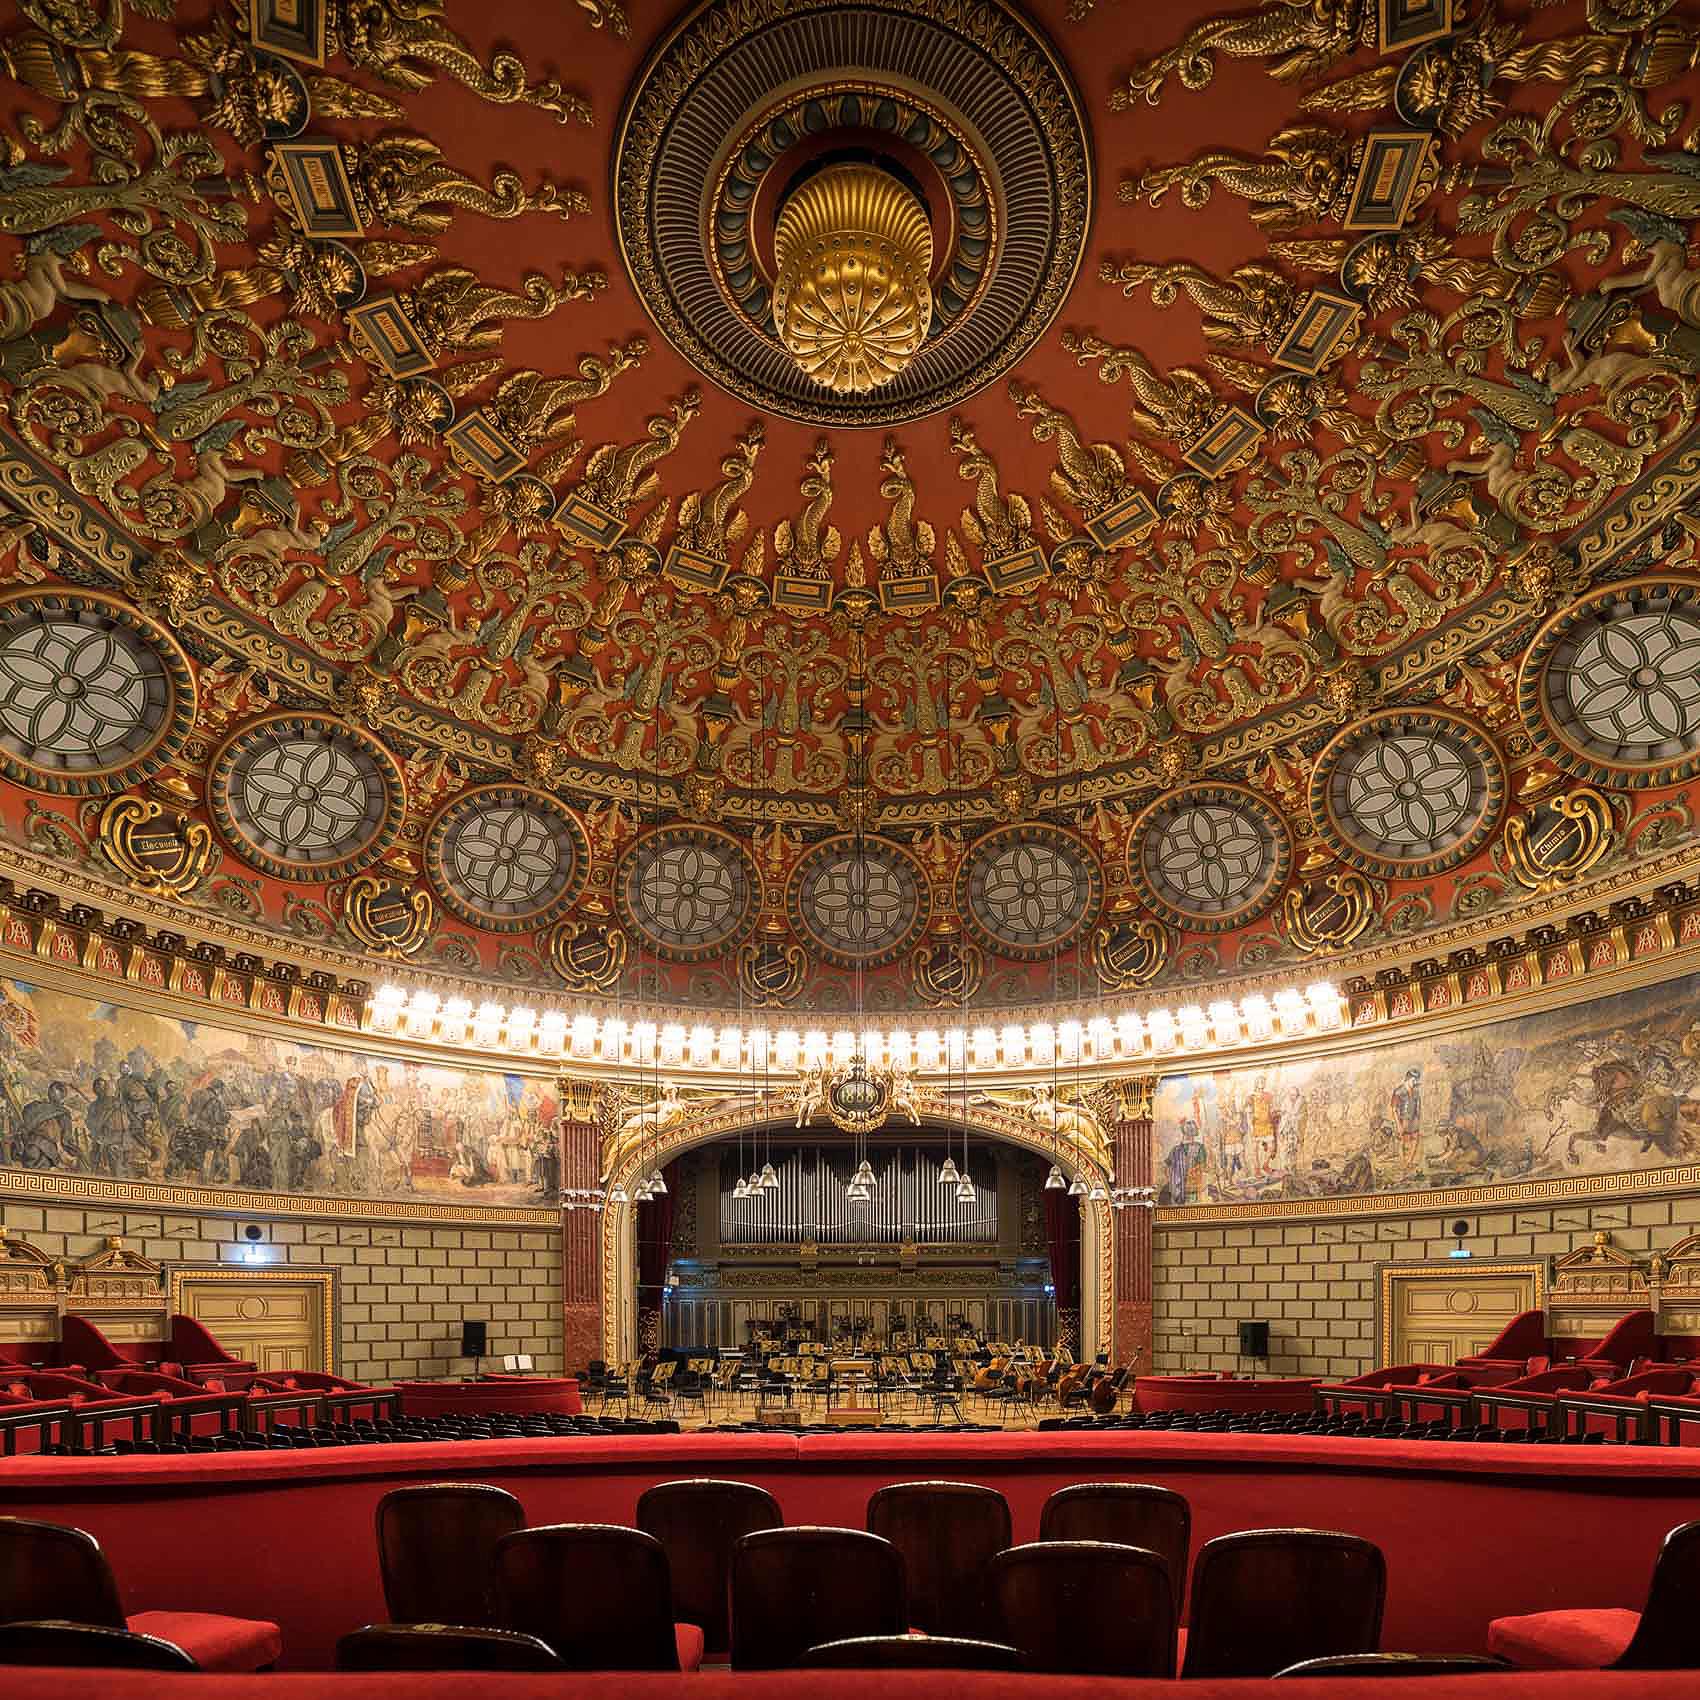 interior-ceiling-athenaeum-concert-hall-architecture-classical-bucharest-romania